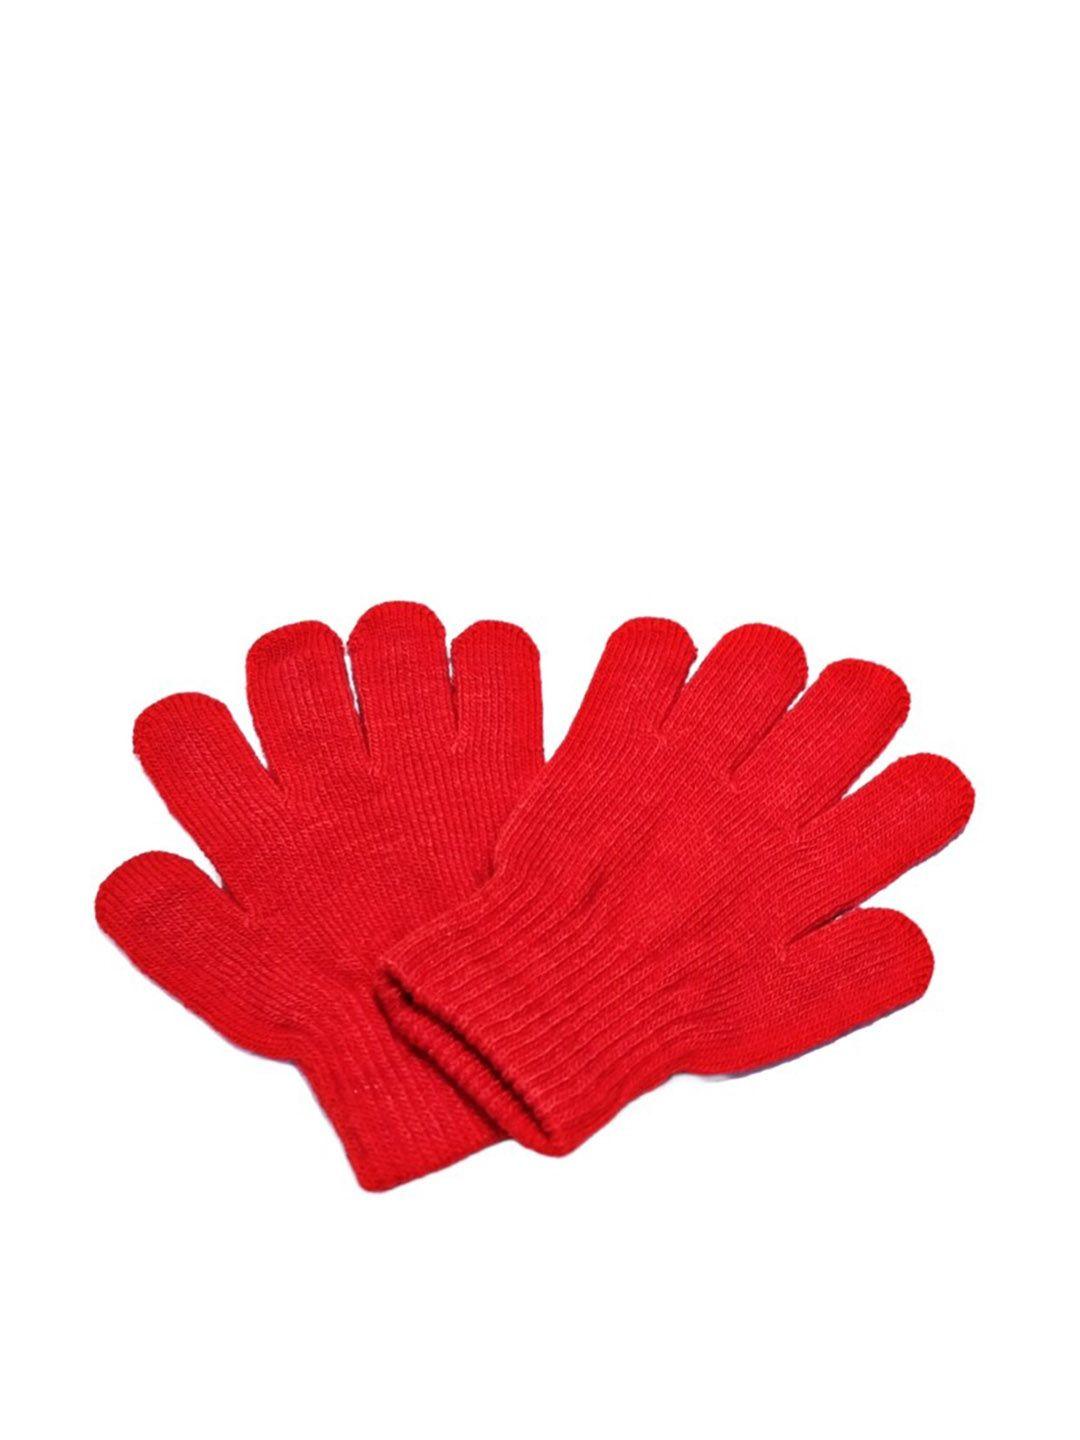 tipy-tipy-tap-girls-full-finger-woolen-winter-gloves